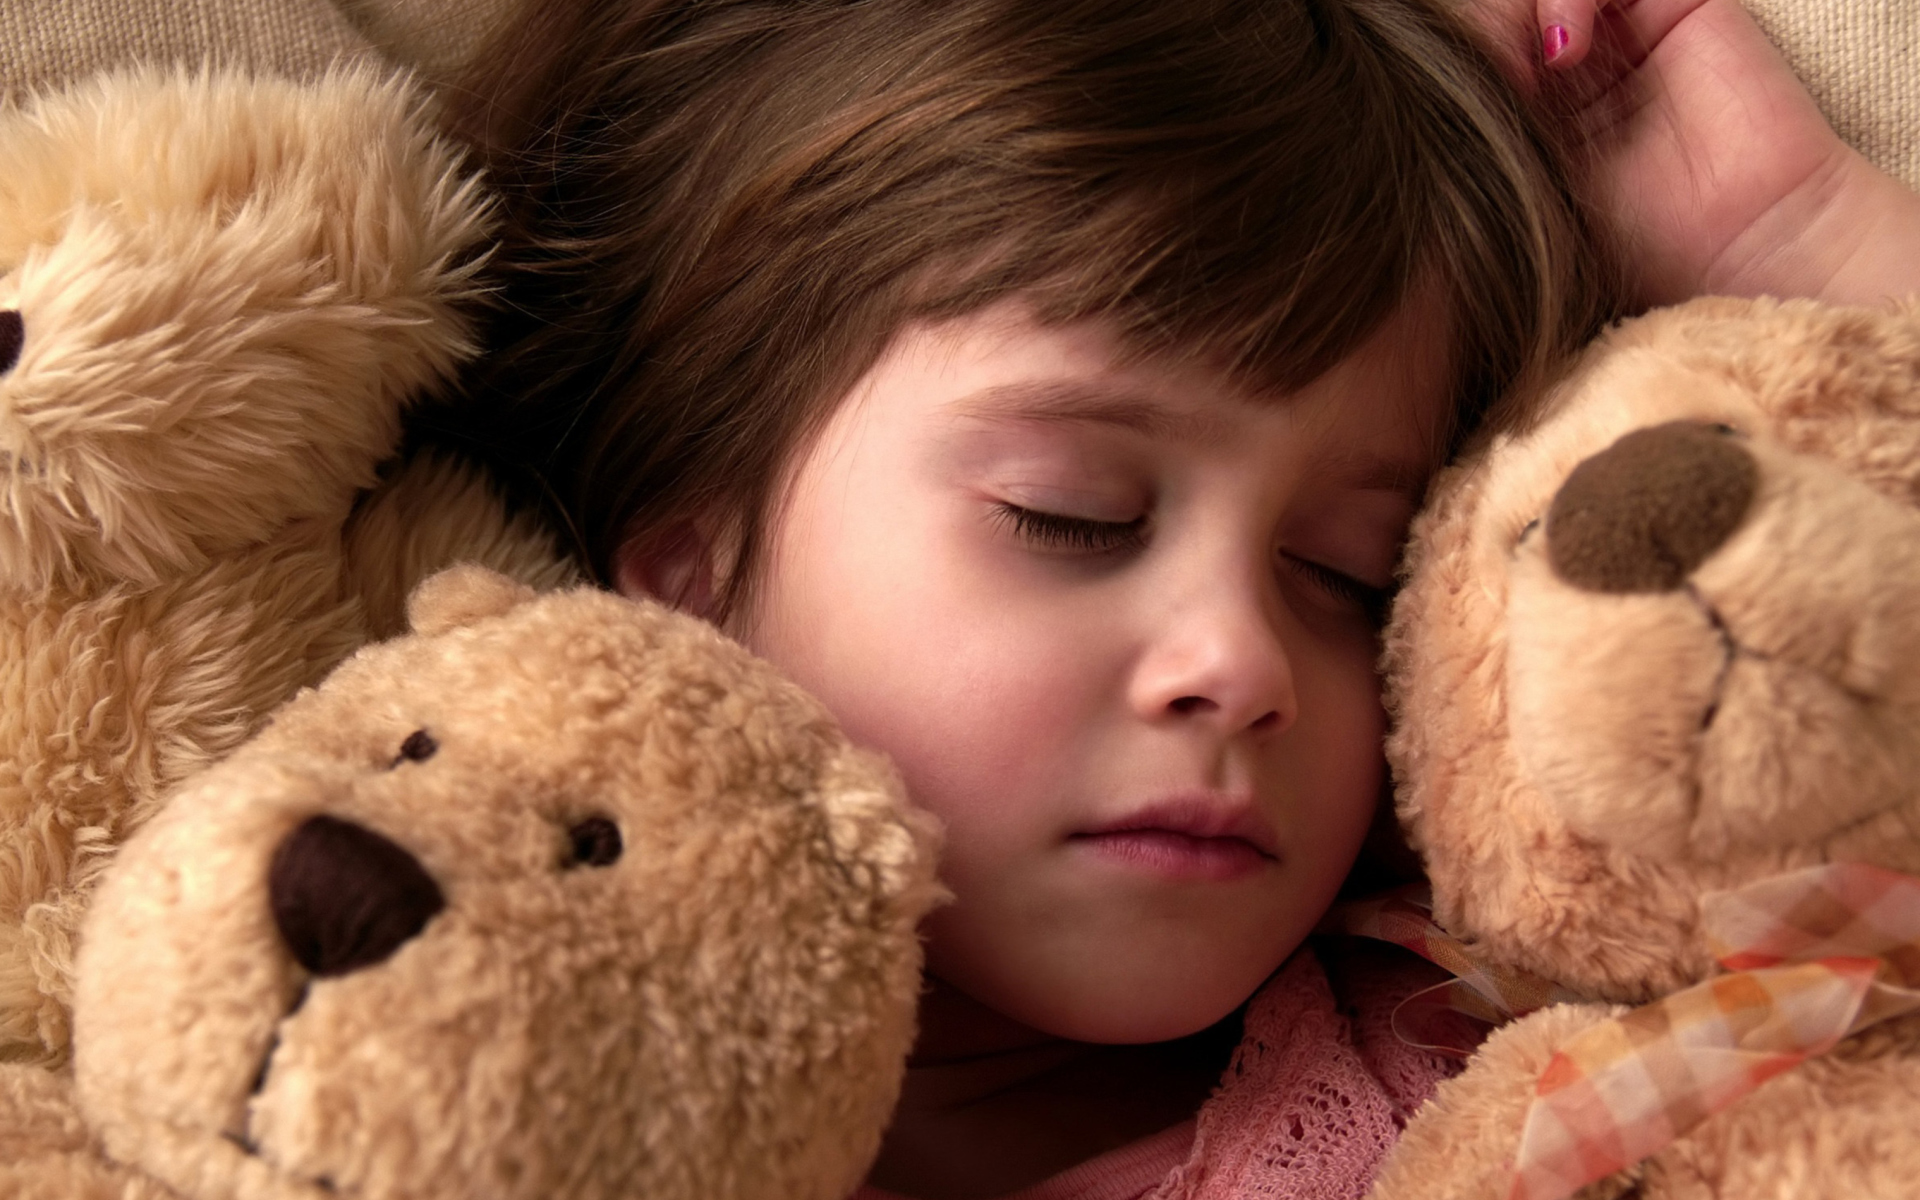 Обои Child Sleeping With Teddy Bear 1920x1200